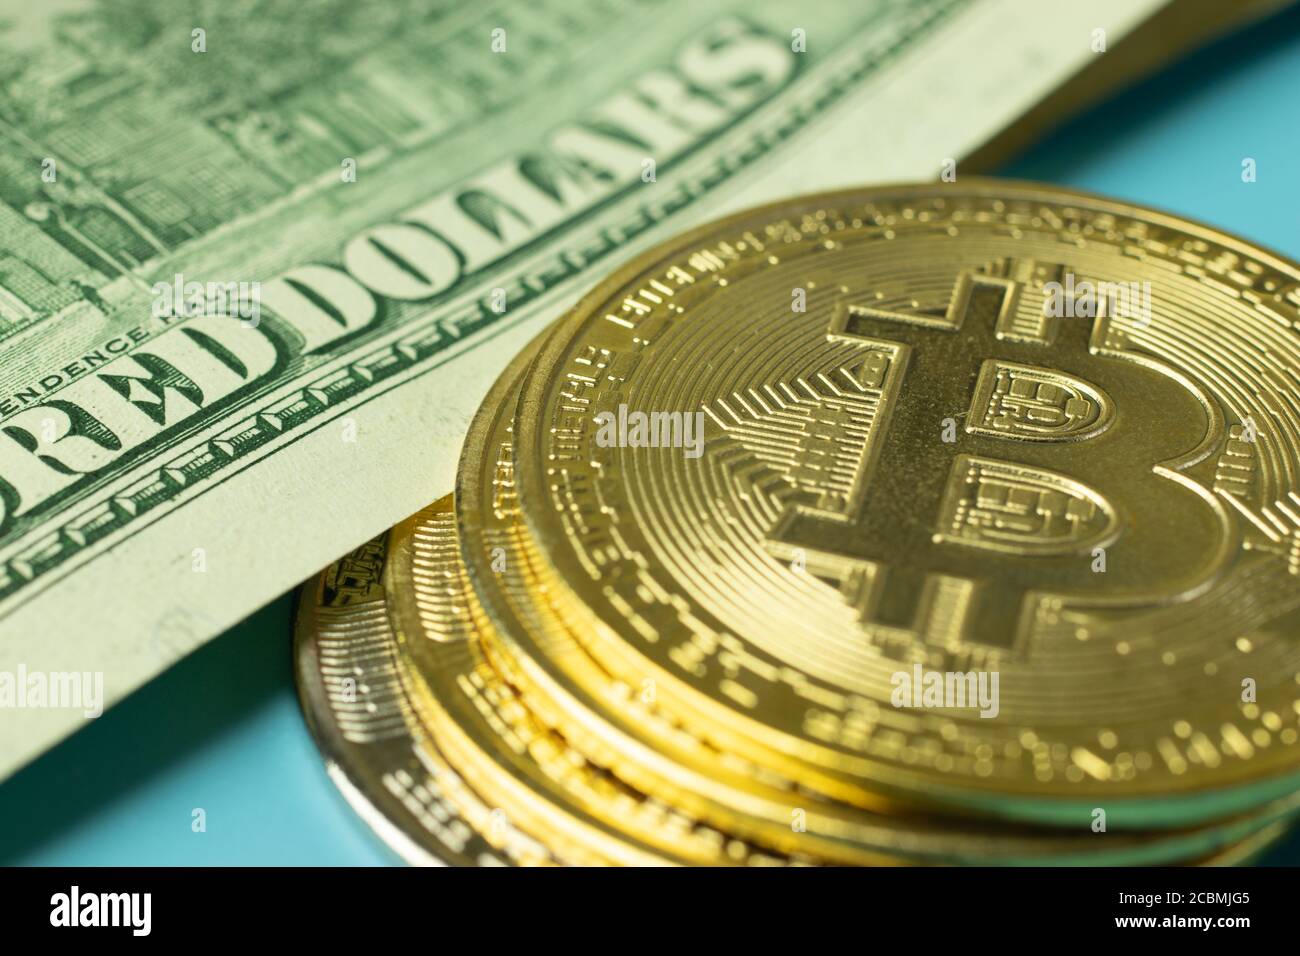 Bitcoin BTC pièce d'or et argent sur fond. Photo macro. Dollars américains Banque D'Images